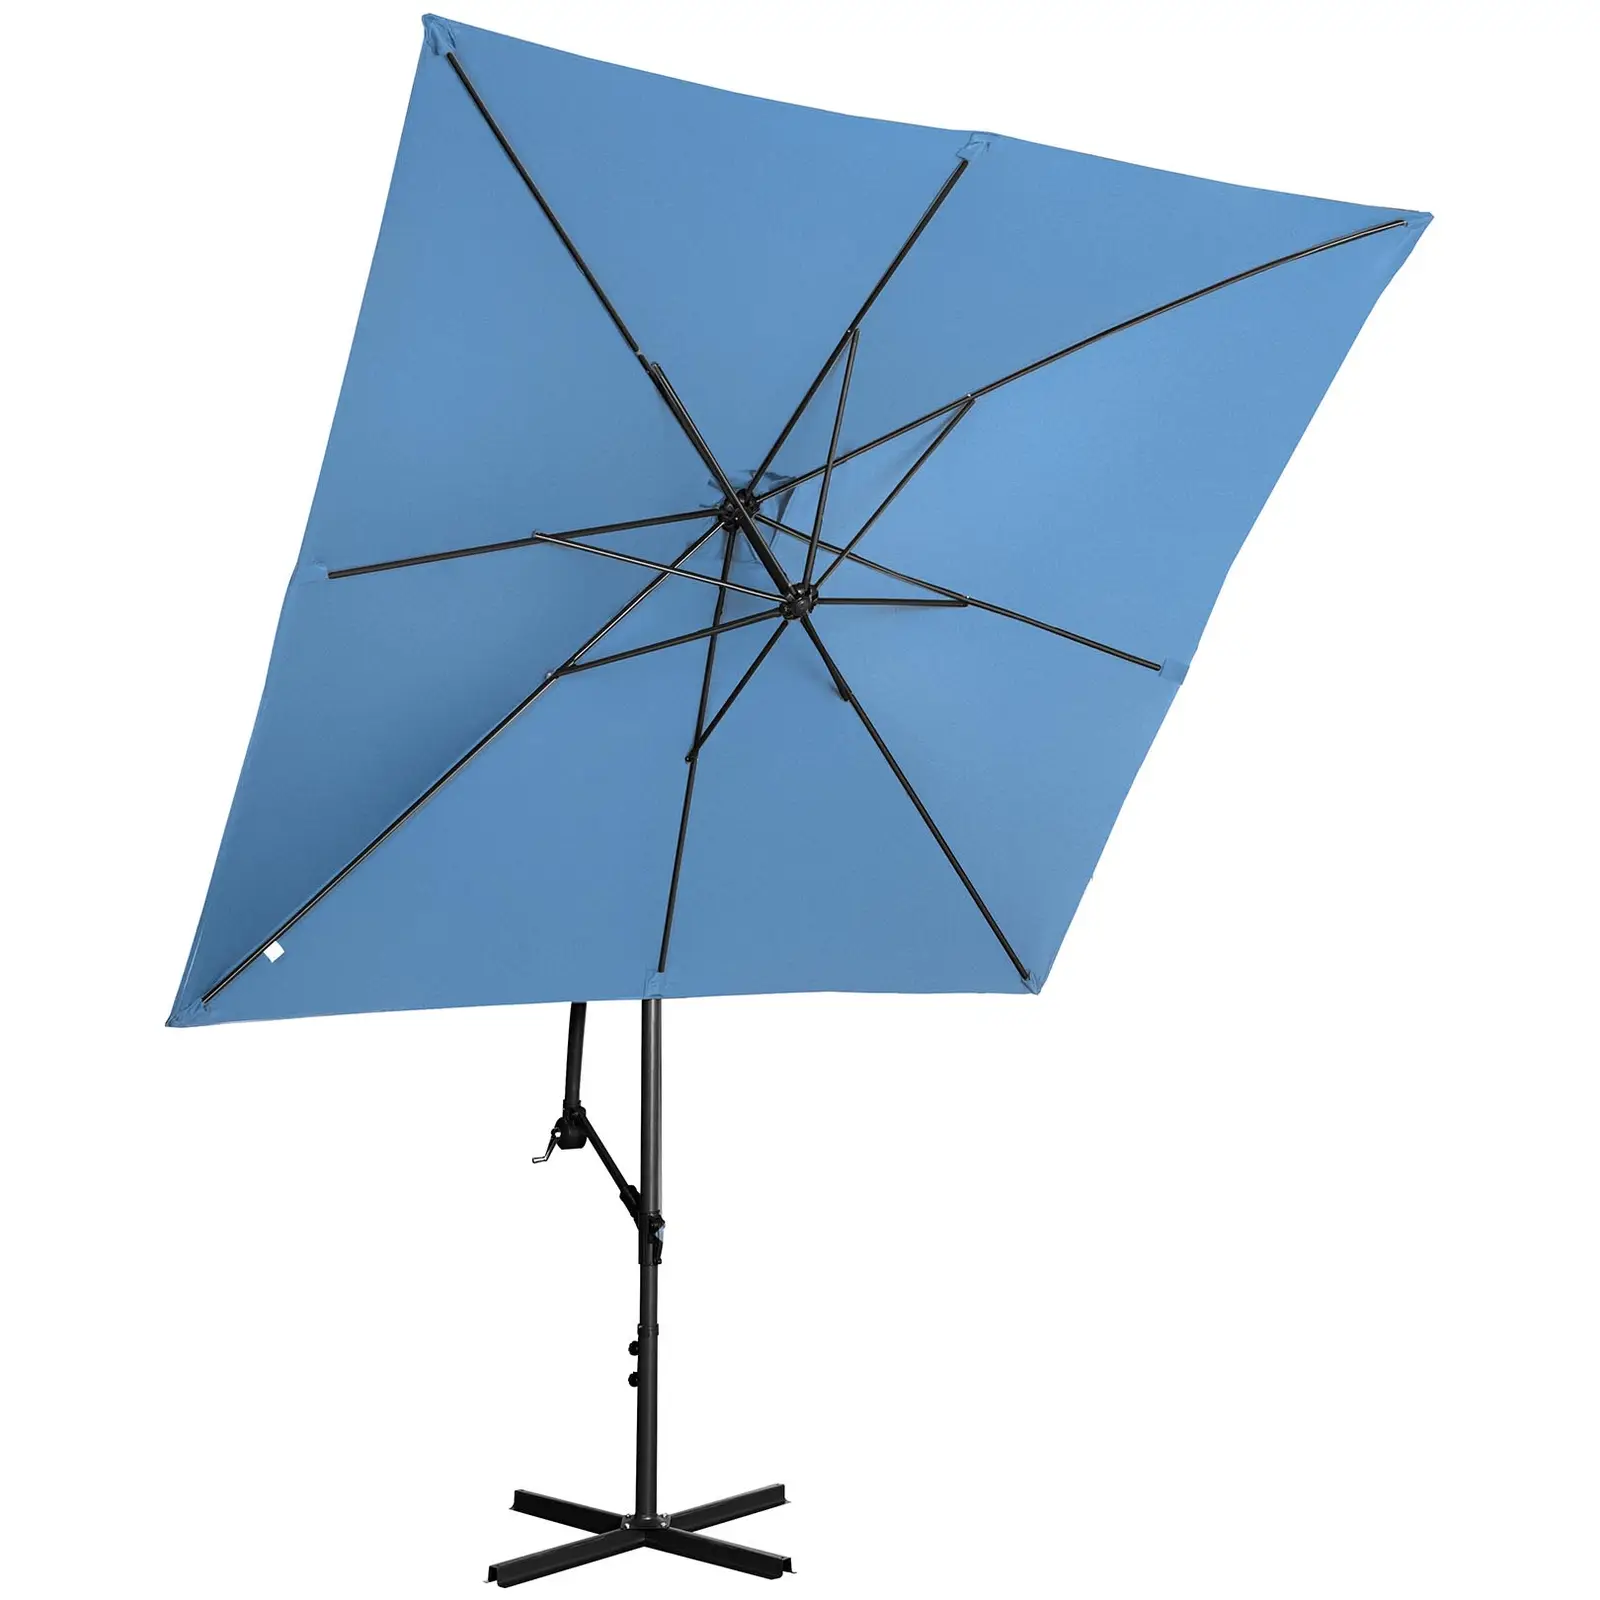 Lámpa formájú napernyő - kék - szögletes - 250 x 250 cm - dönthető